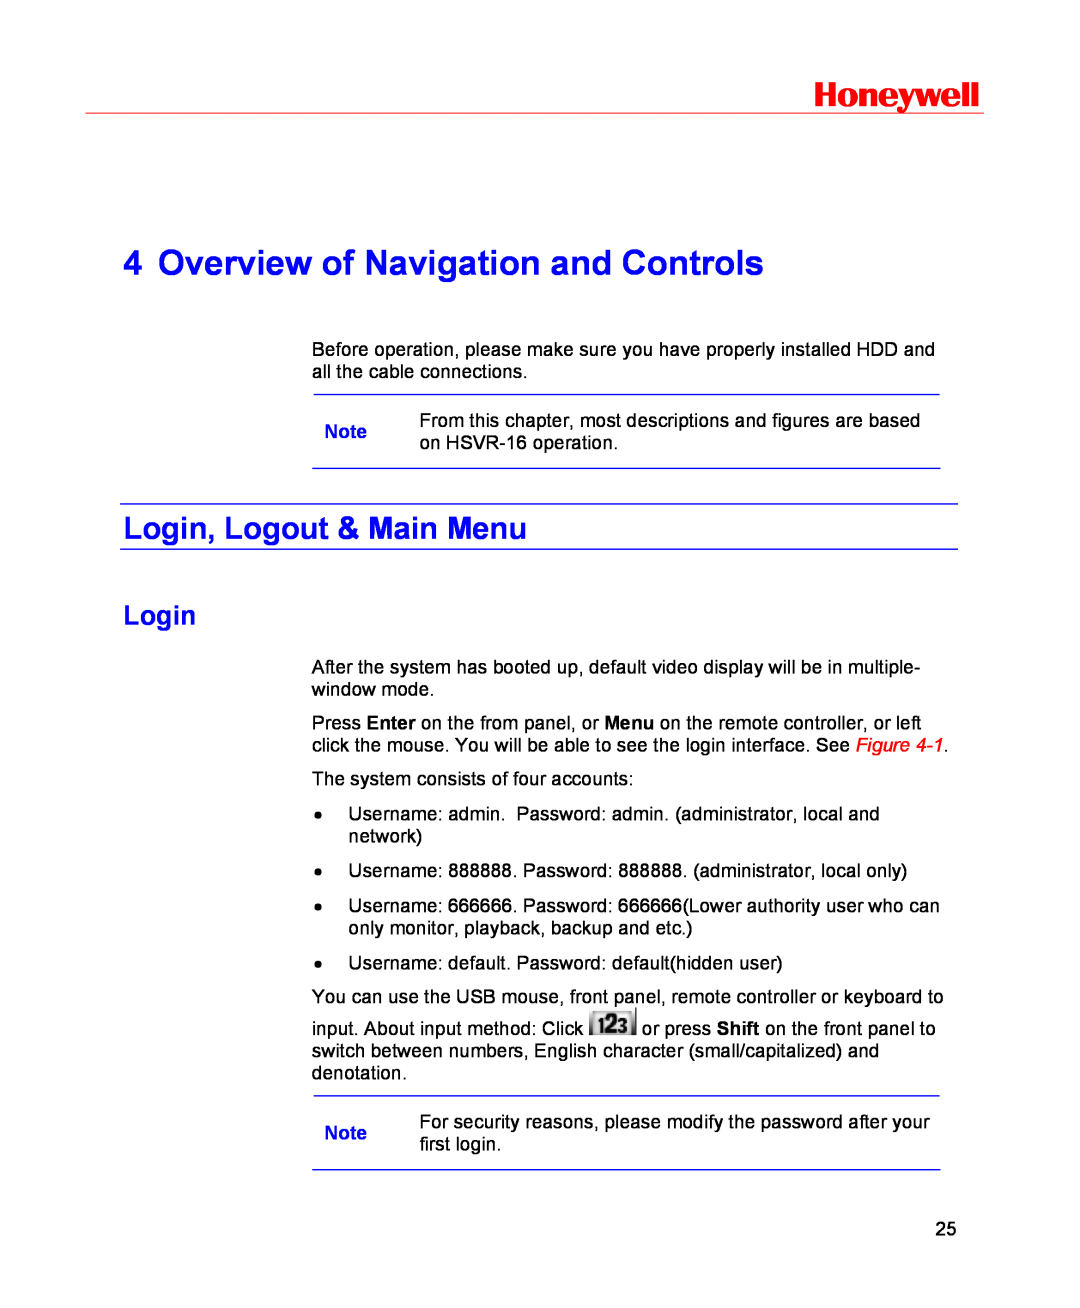 Honeywell HSVR-16, HSVR-04 user manual Overview of Navigation and Controls, Login, Logout & Main Menu, Honeywell 